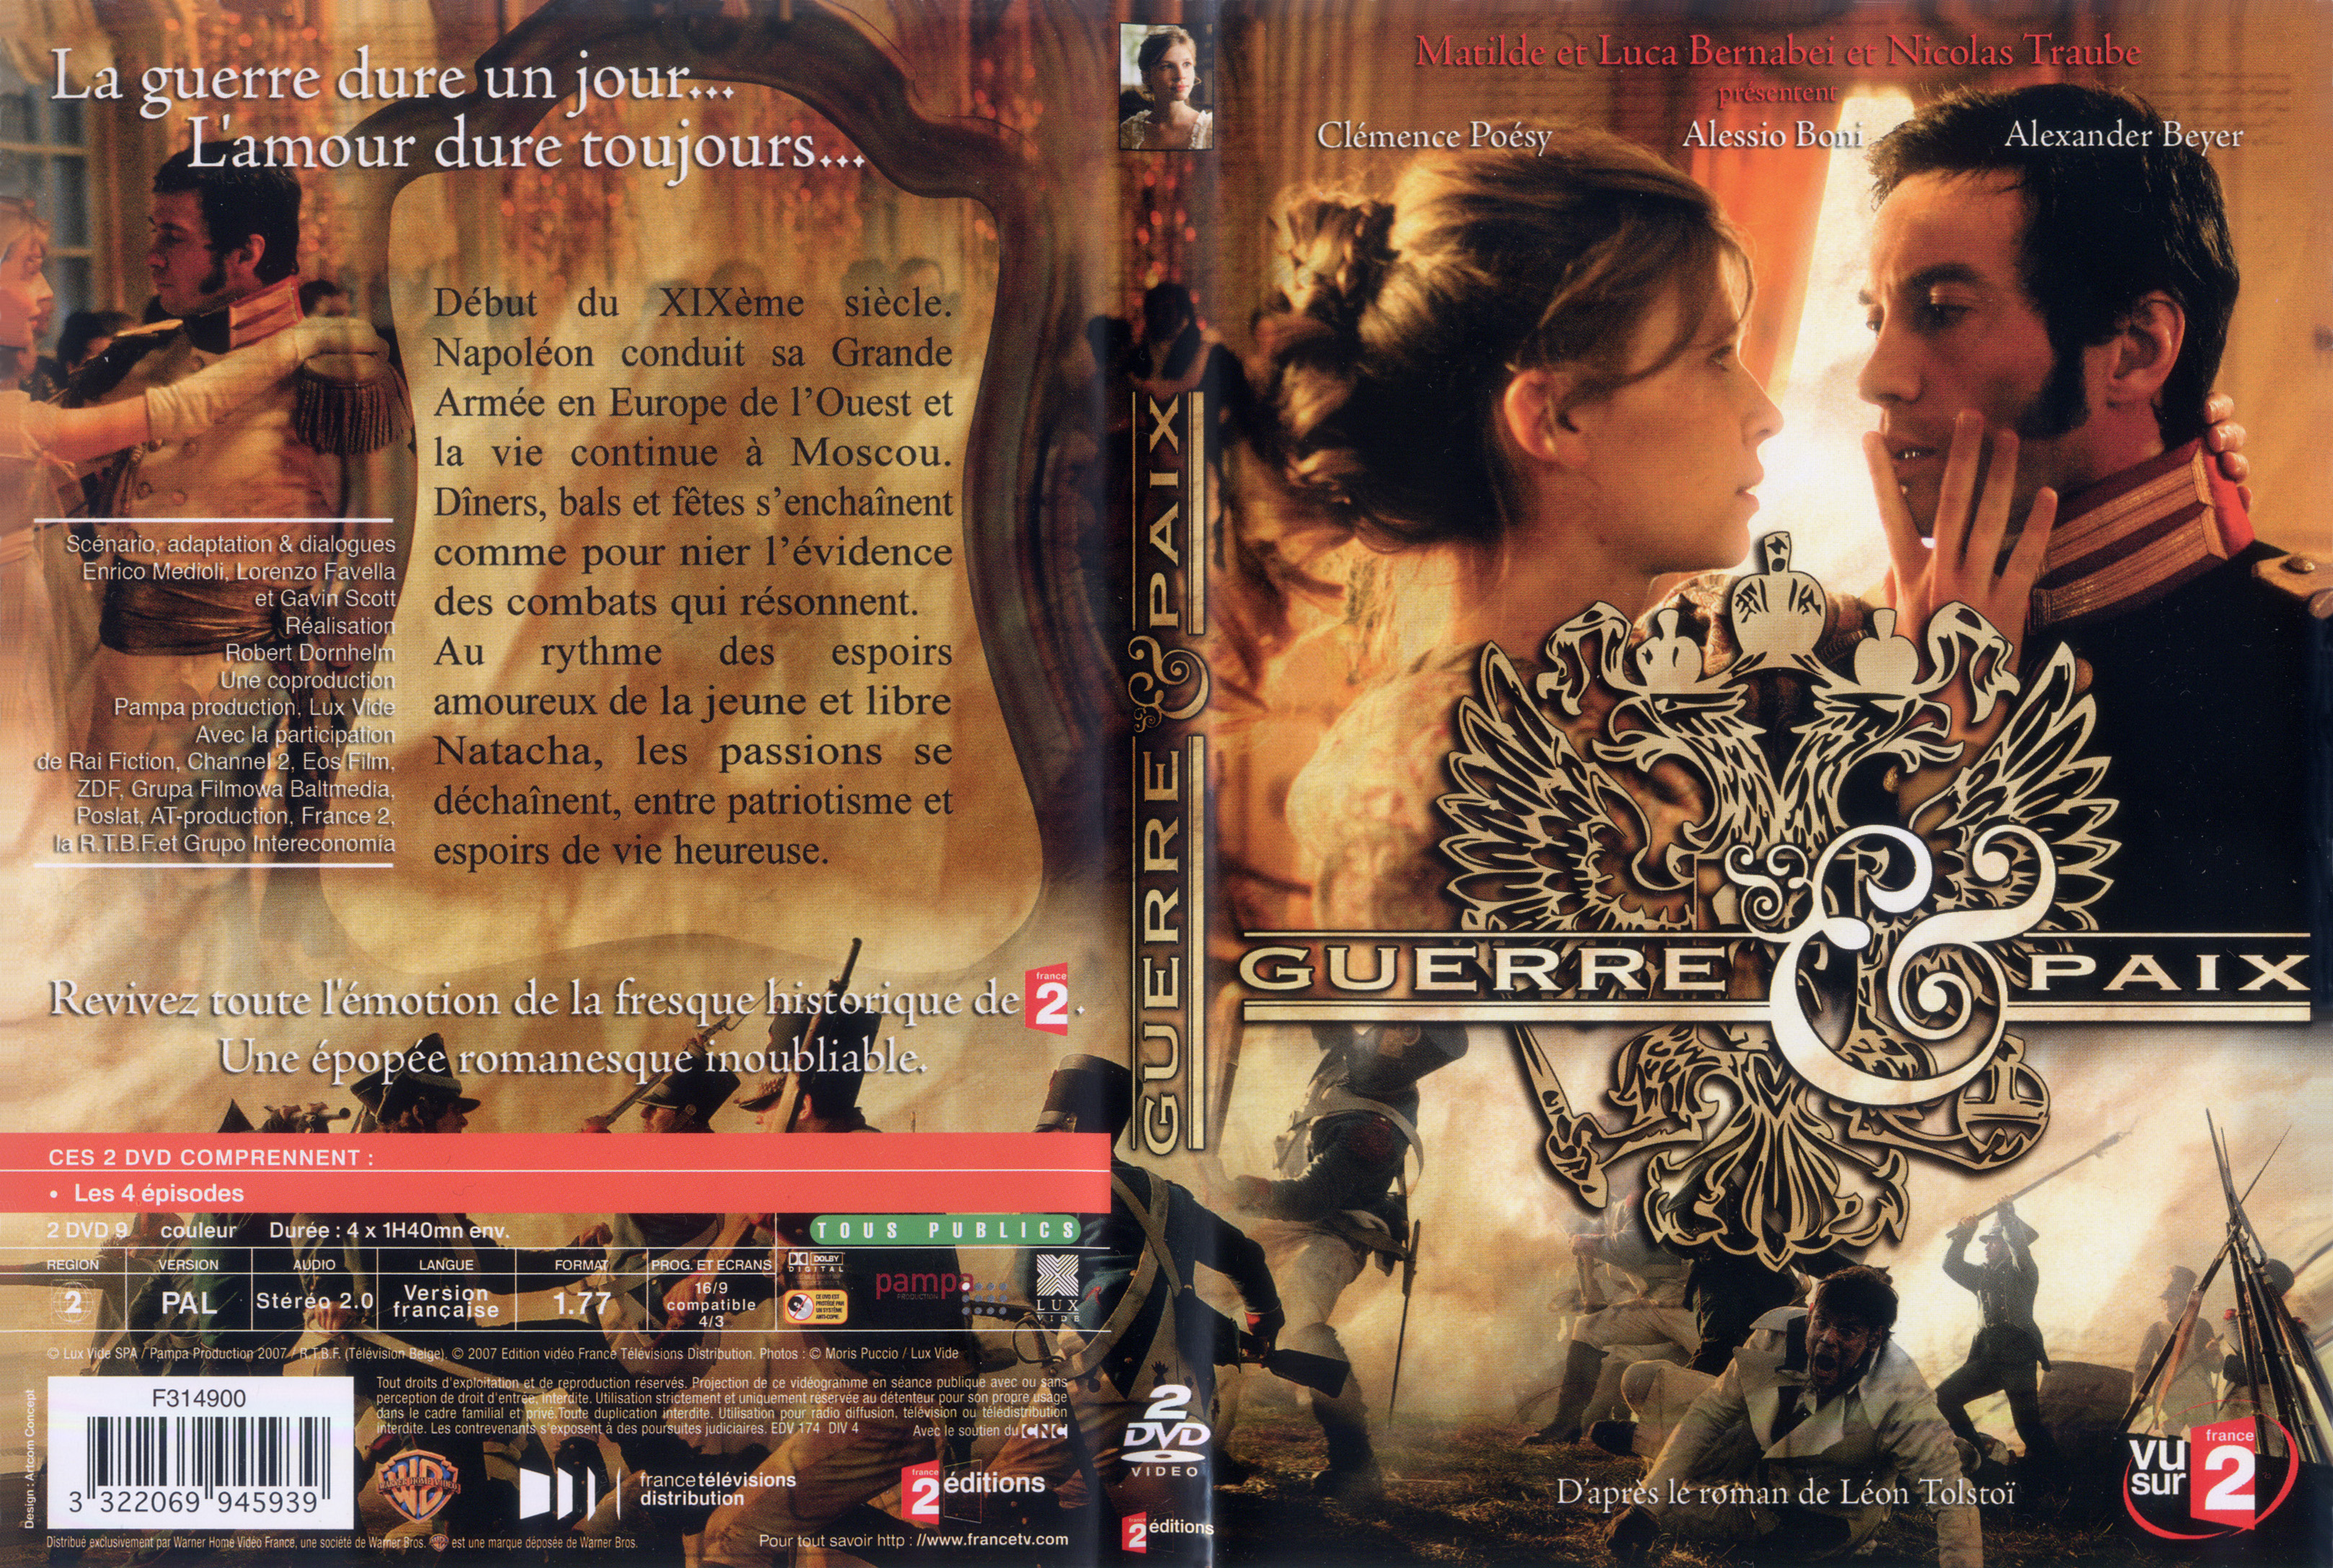 Jaquette DVD Guerre et paix (2007)